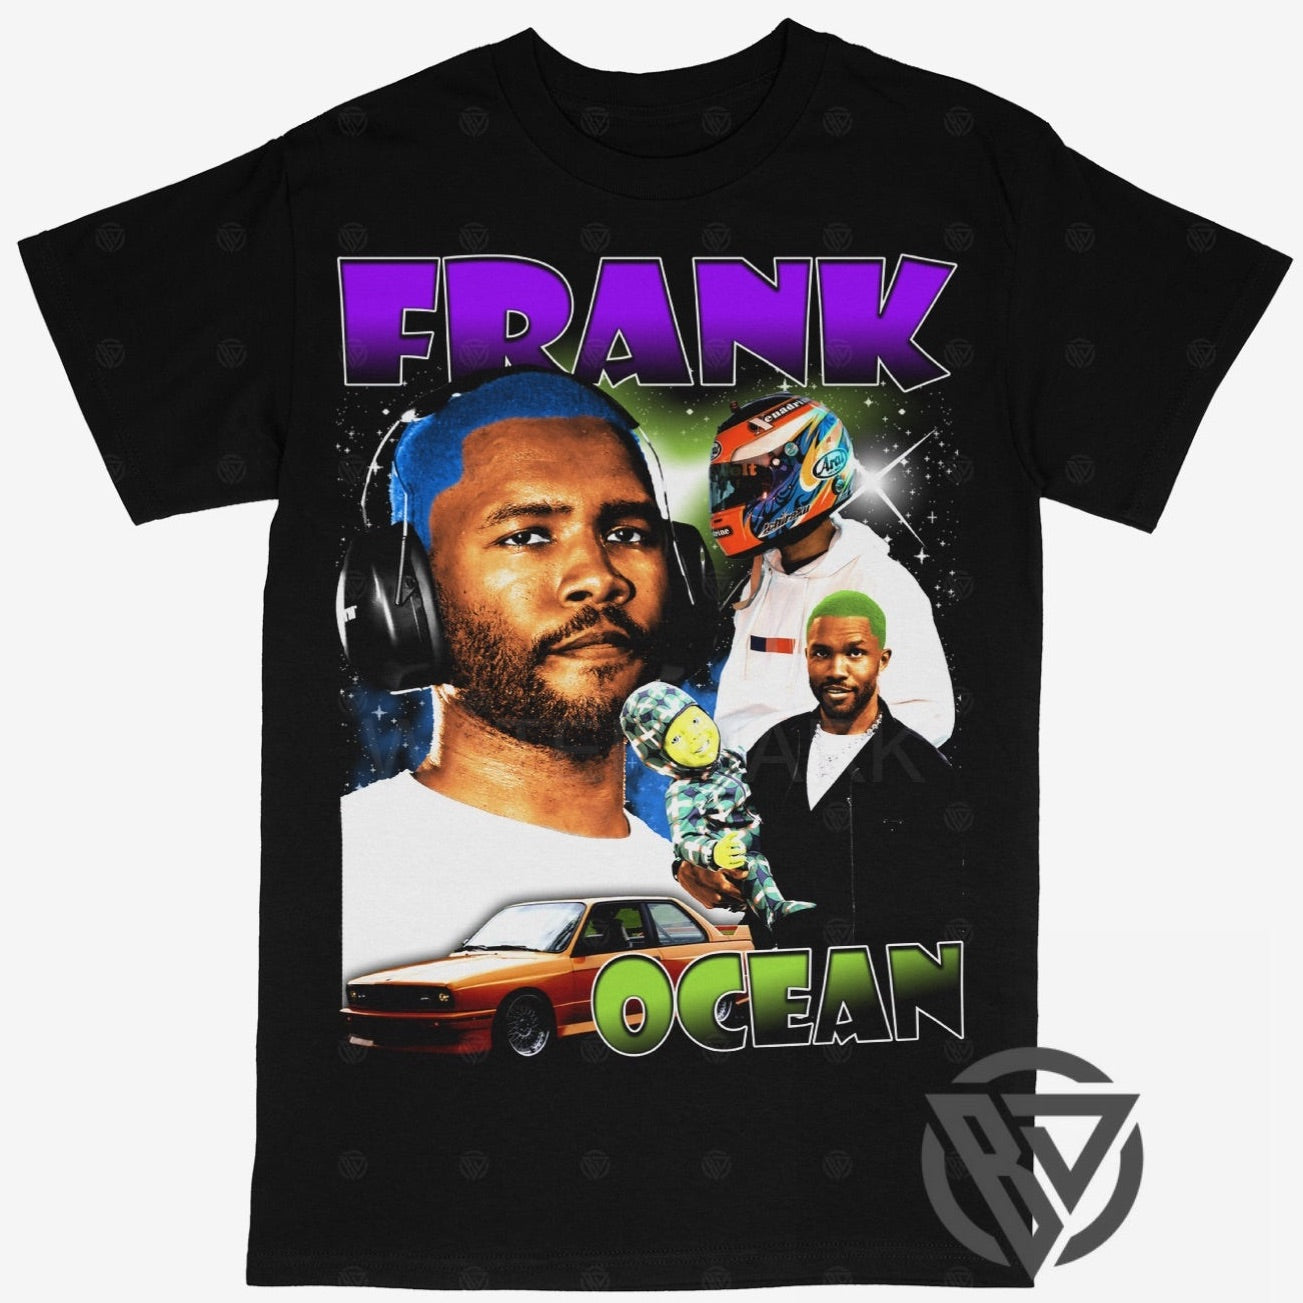 Frank Ocean Tee Shirt Hip Hop Rap Style Concert Tour Music Artist